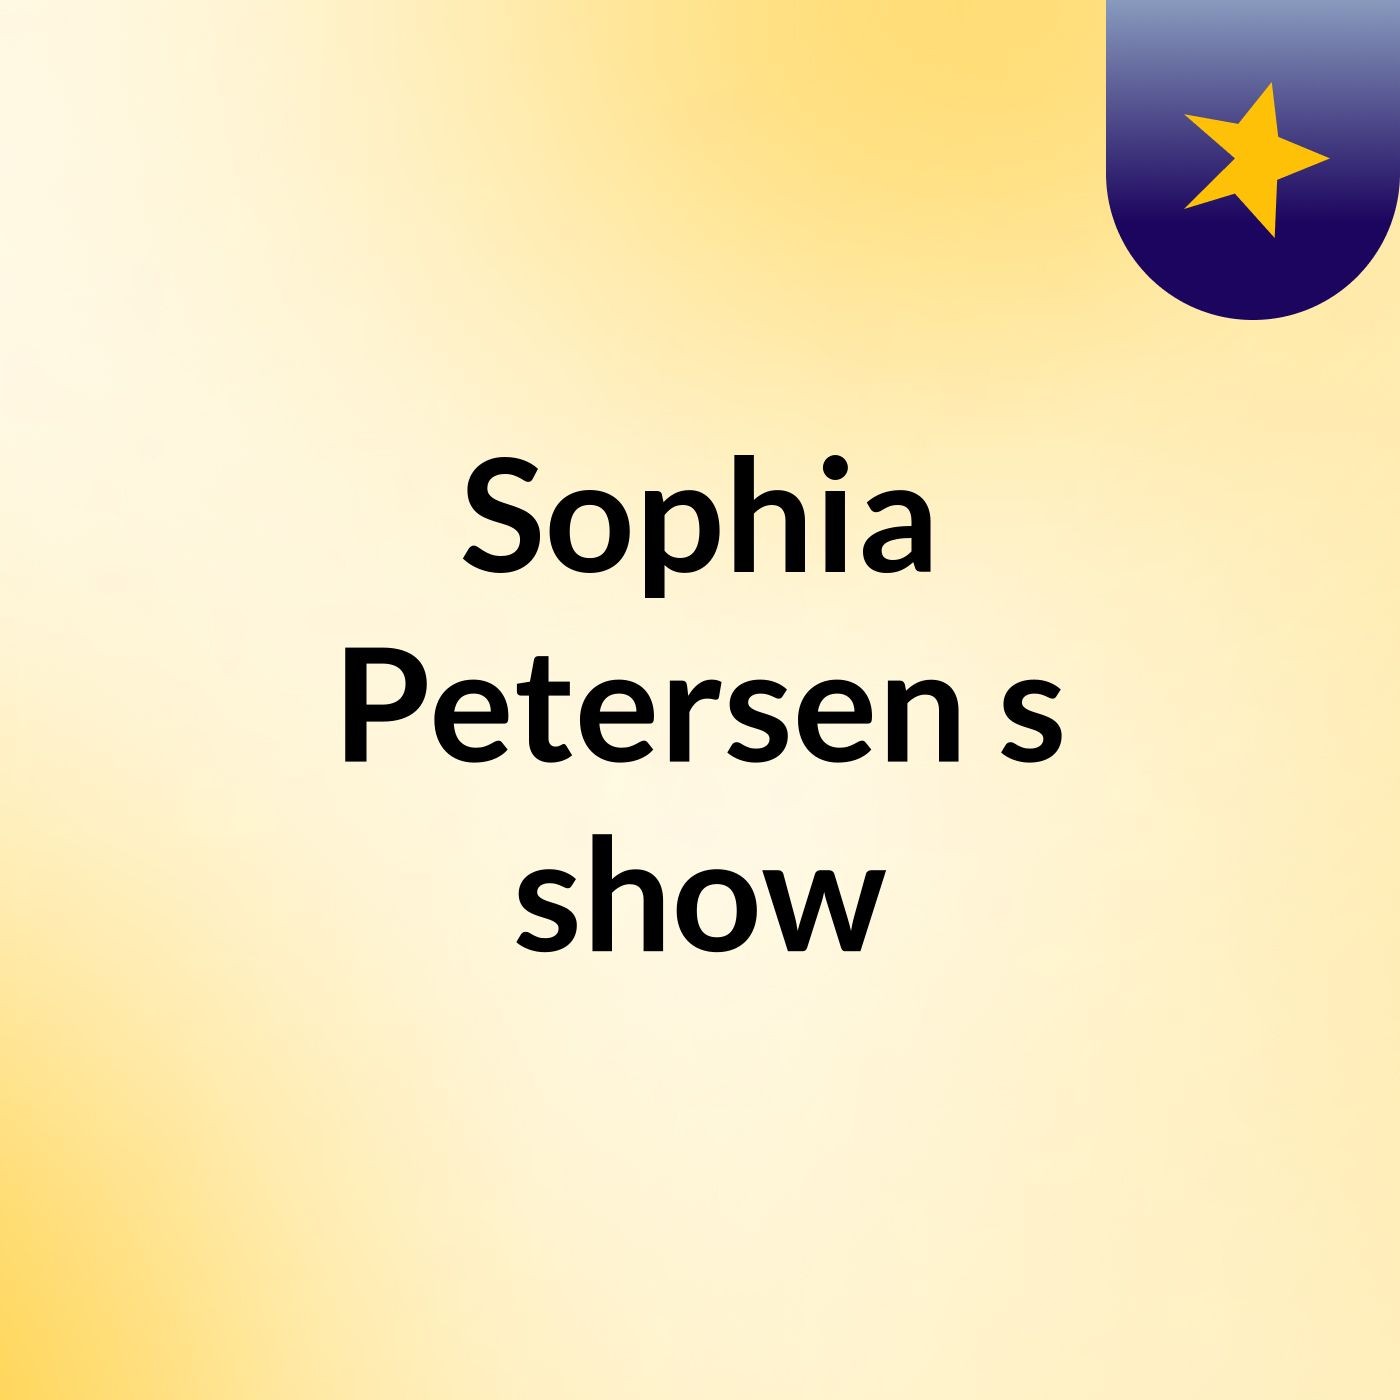 Sophia Petersen's show